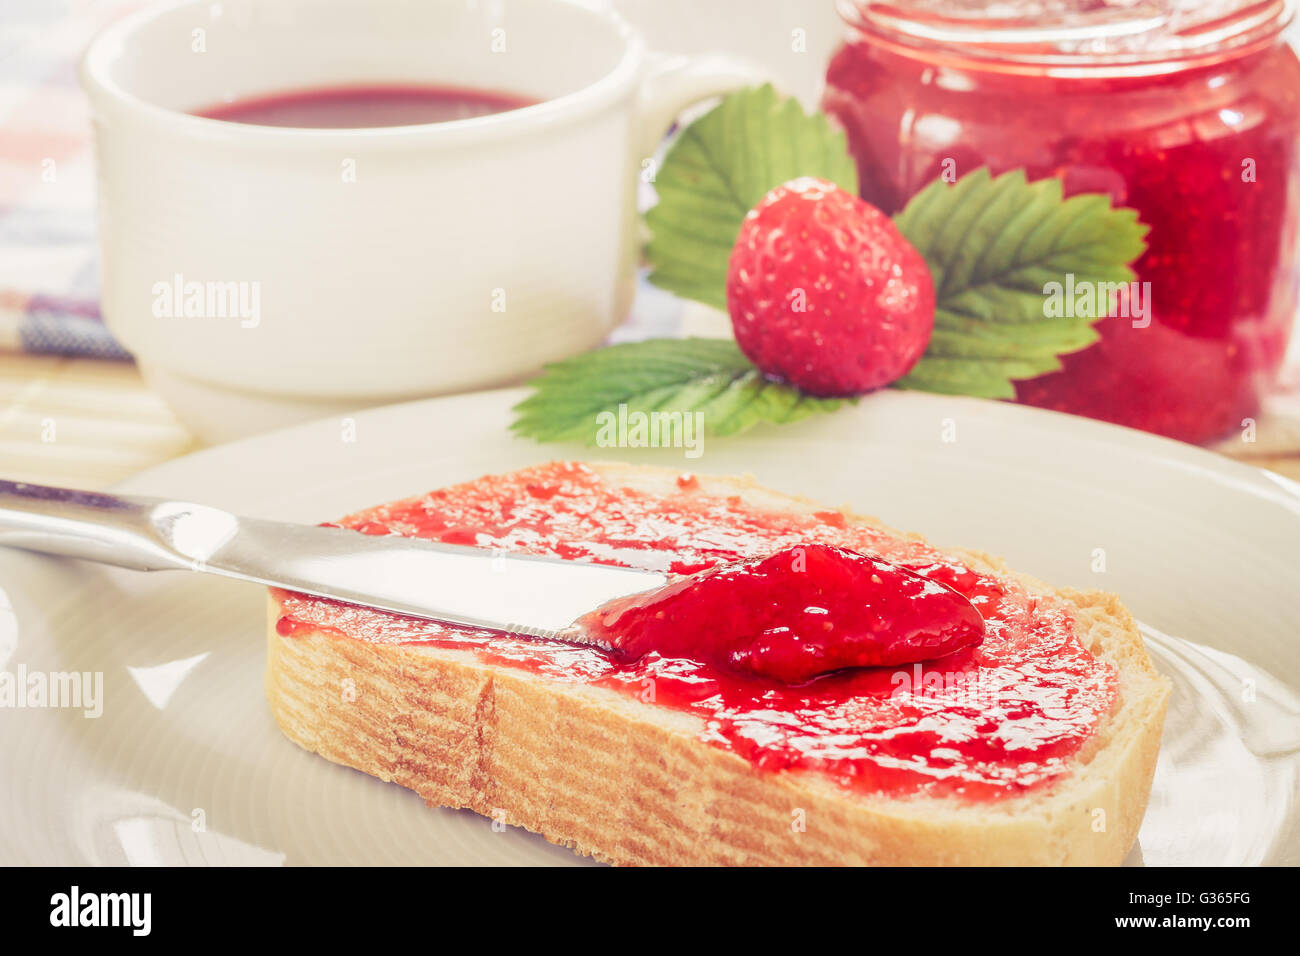 Scheibe Brot mit Glas Erdbeer Marmelade, Tee Teetasse, und frischen Erdbeeren und Blätter neben ihm. Konzept-Bild für ha Stockfoto